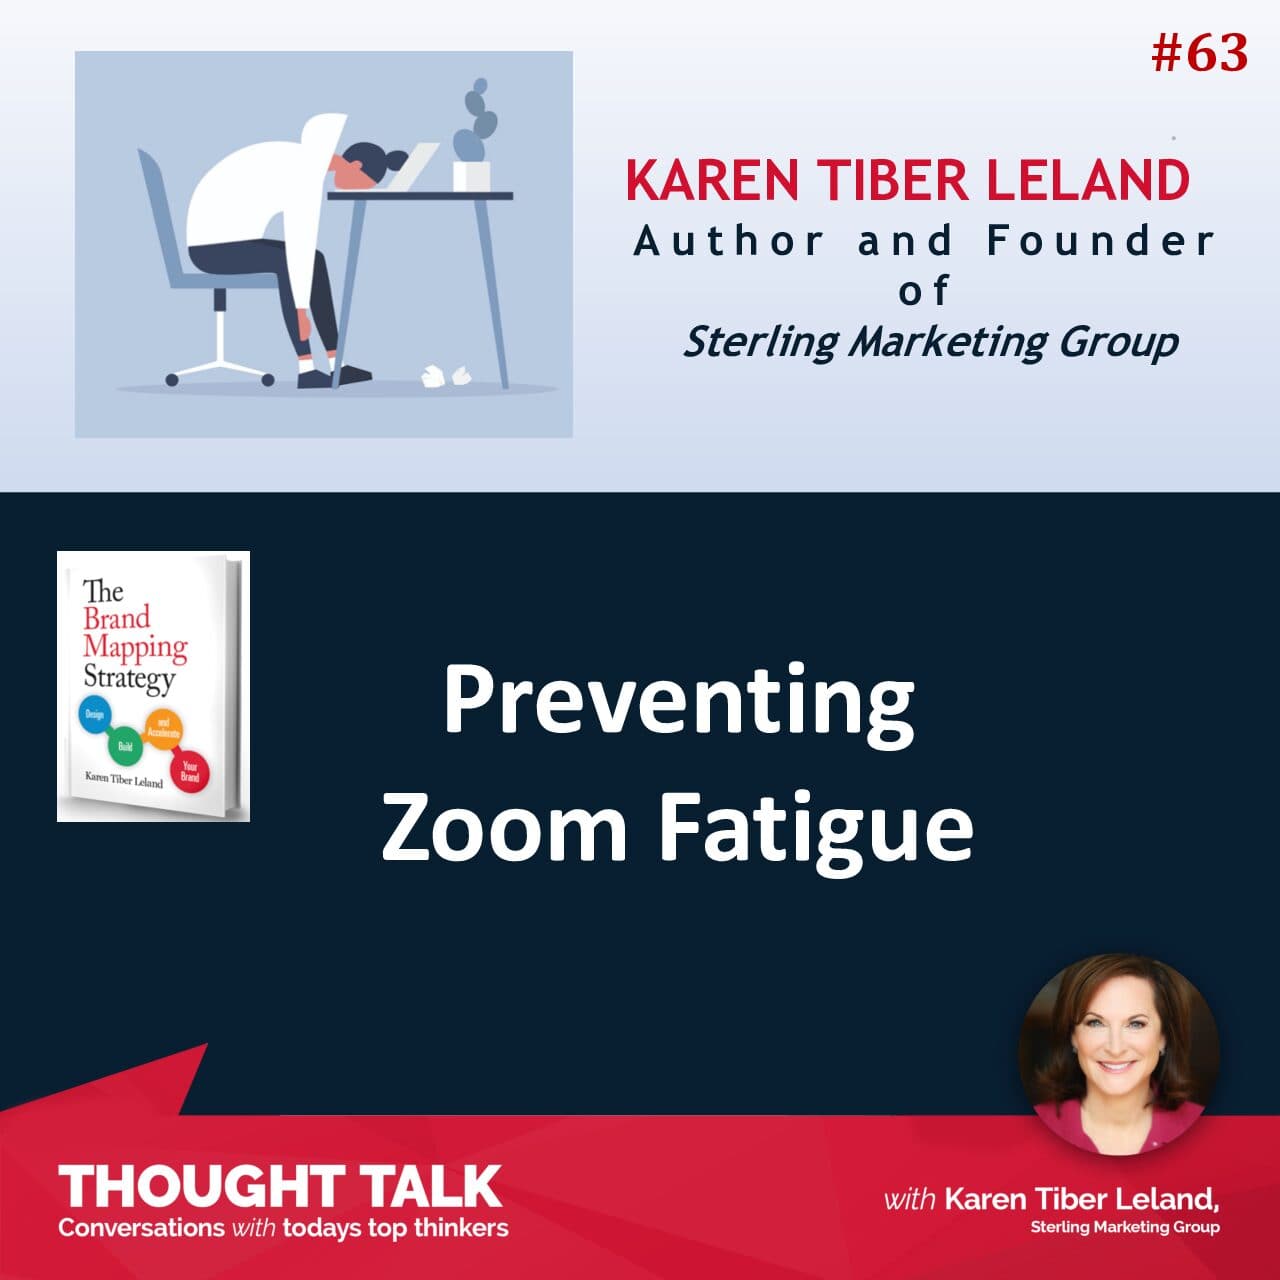 Karen Tiber Leland gives tips on avoiding Zoom Fatigue